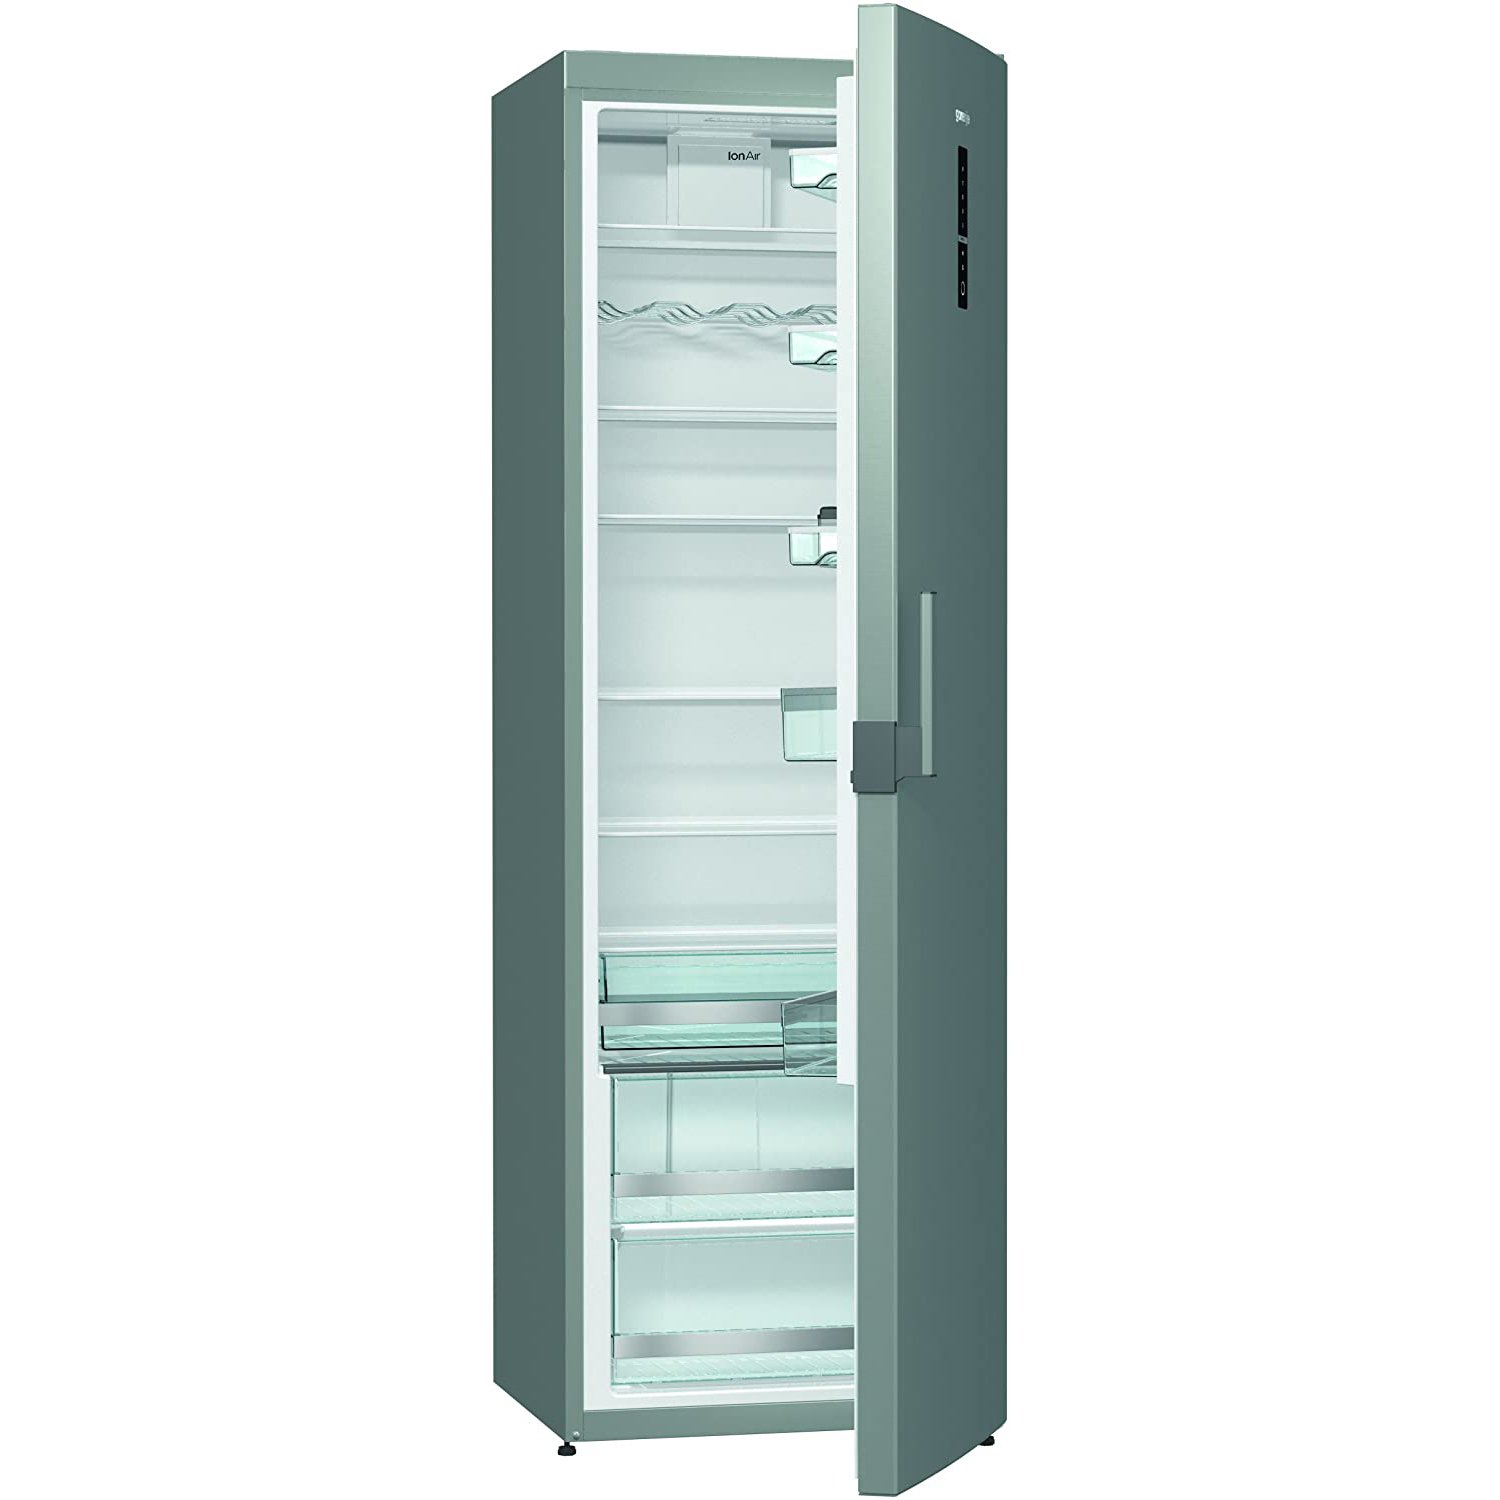 Großer Kühlschrank ohne Gefrierfach Test & Vergleich » Top 13 im